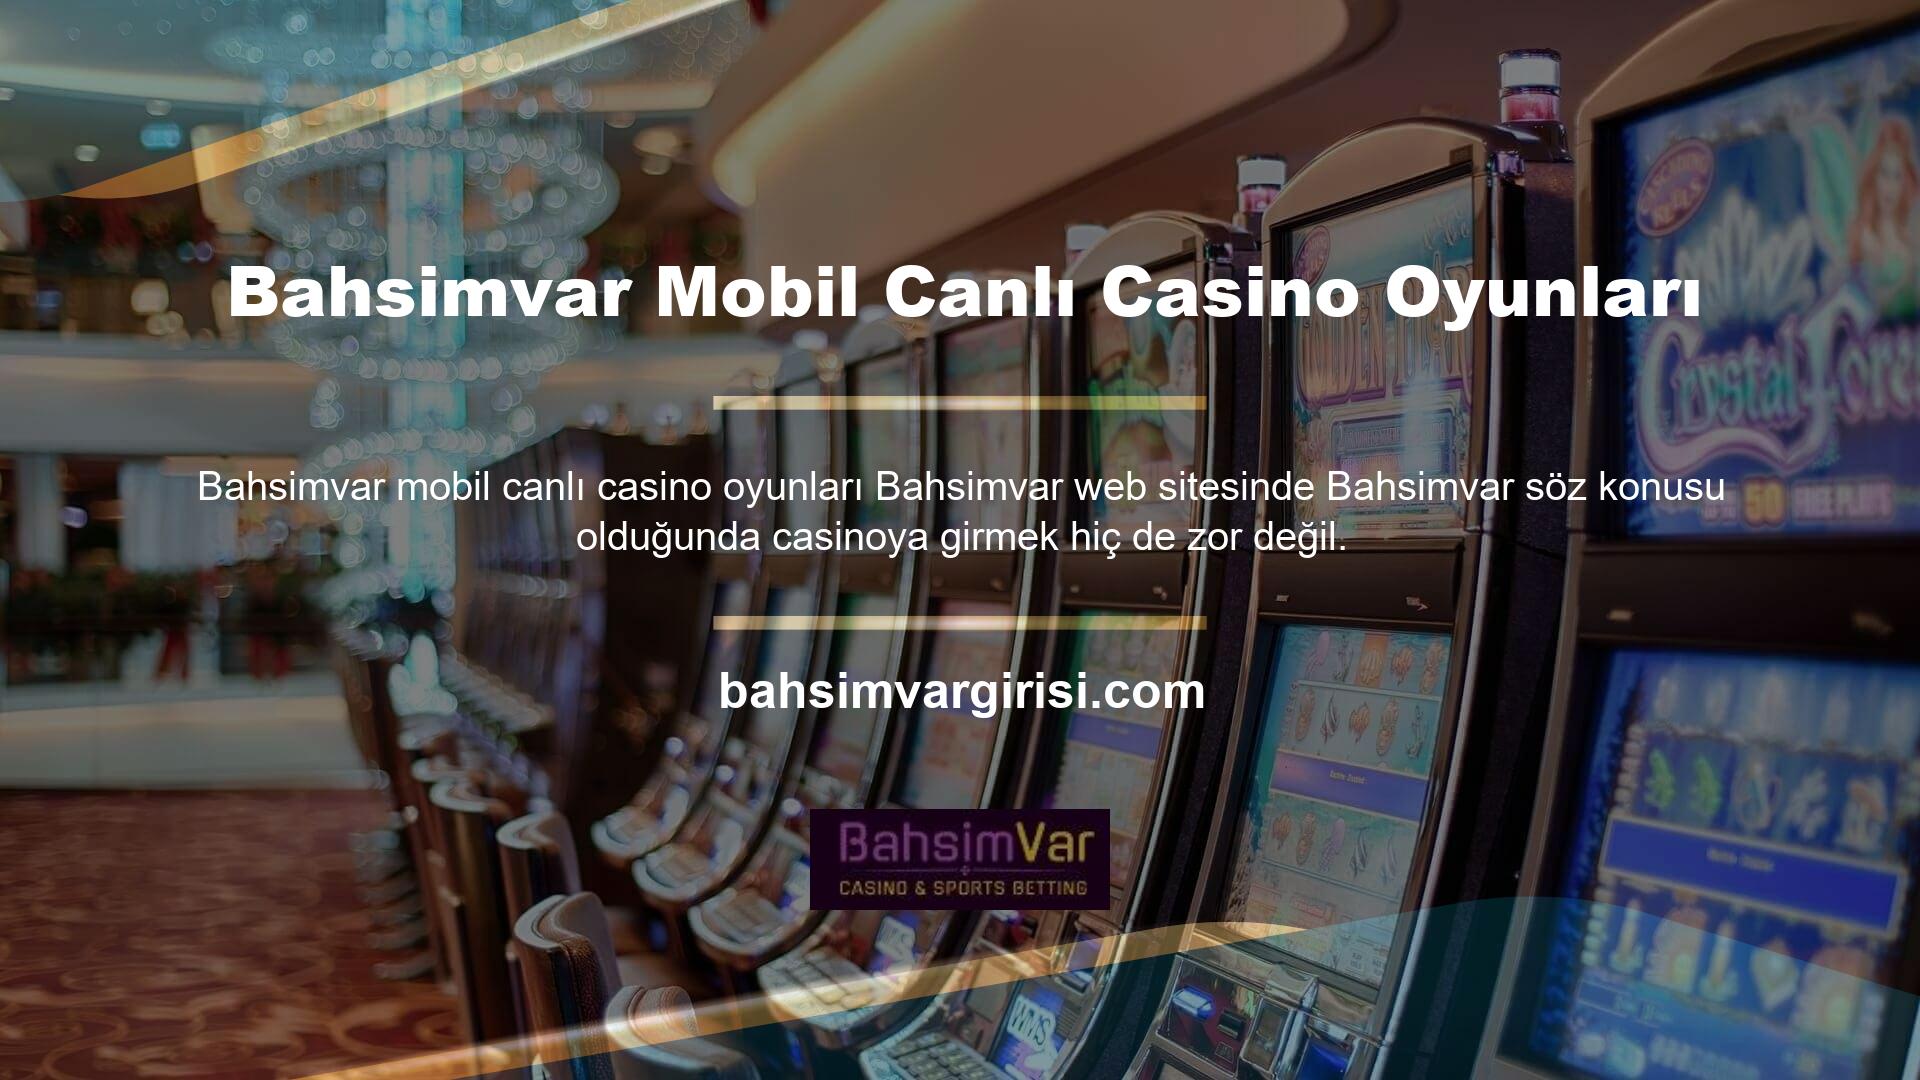 Ayrıca mobil cihazlarda canlı casino işlemleri de oldukça başarılıdır